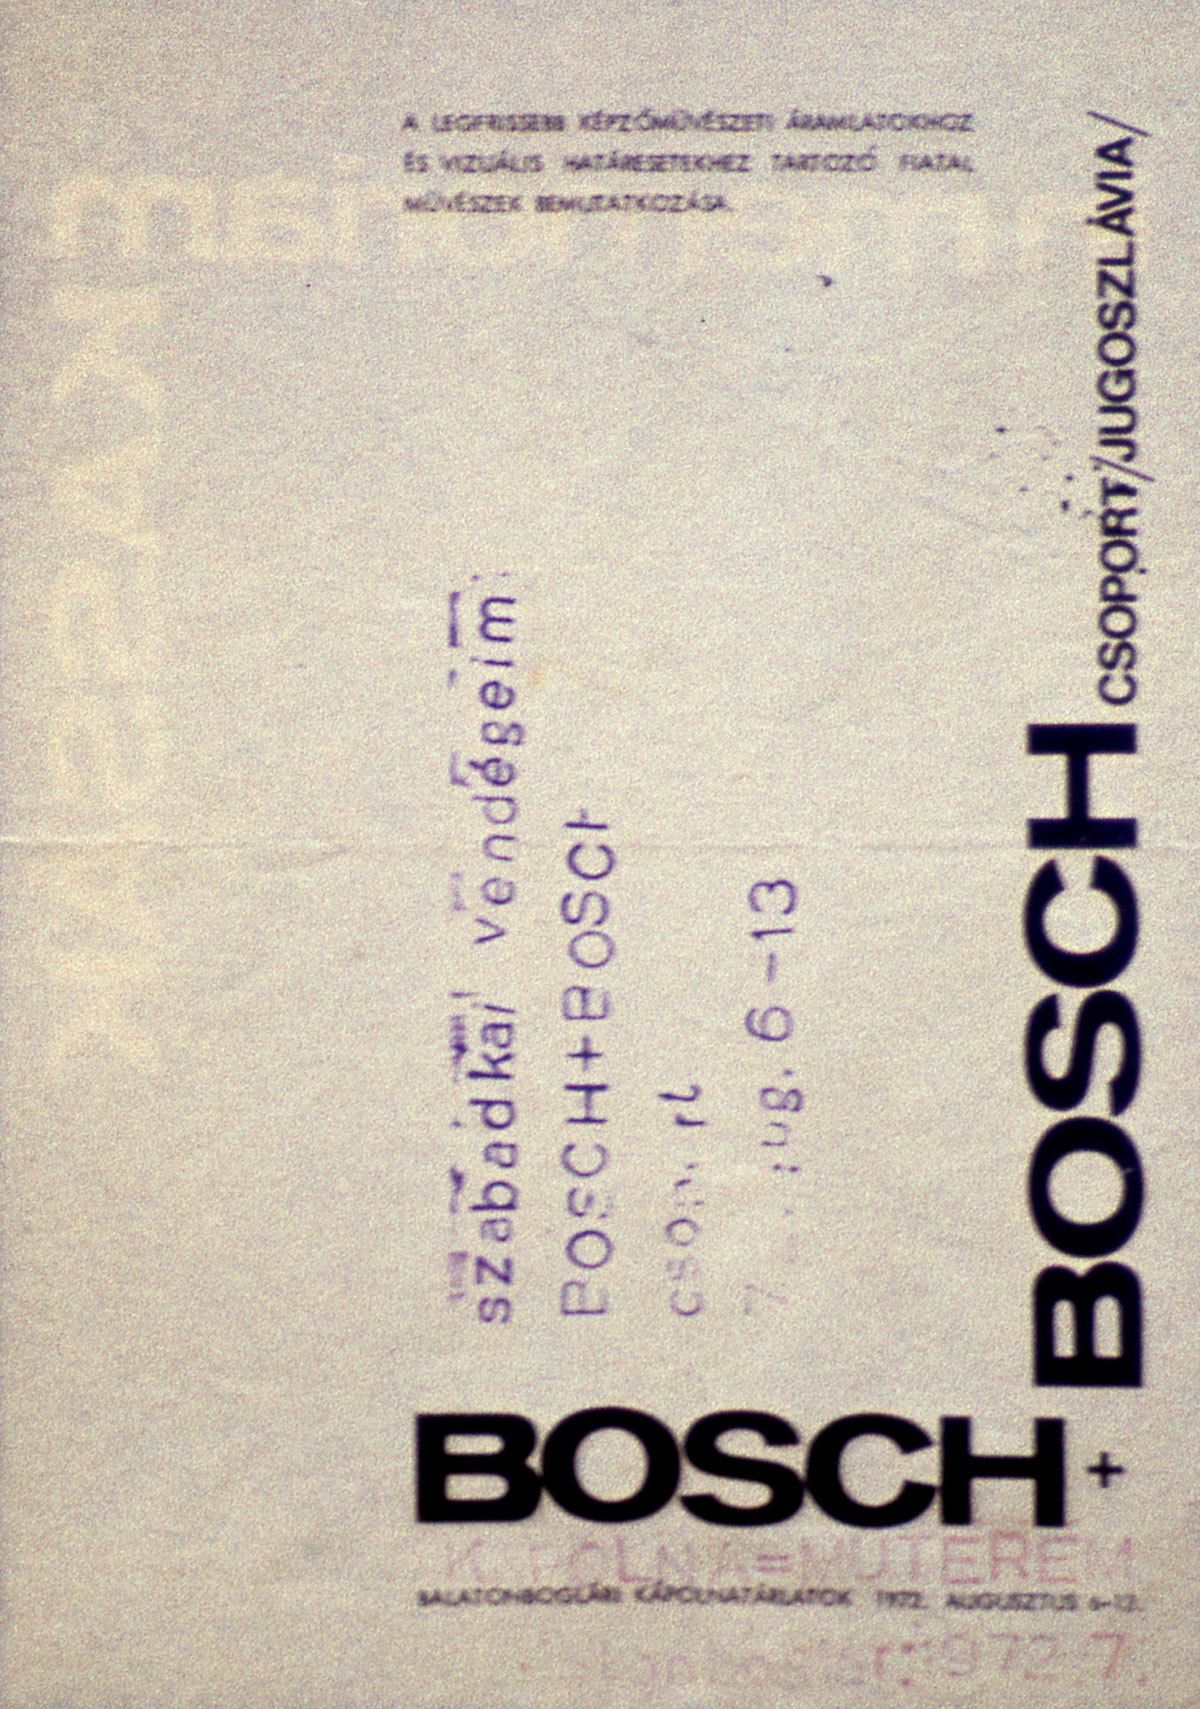 A Bosch + Bosch csoport szórólapja